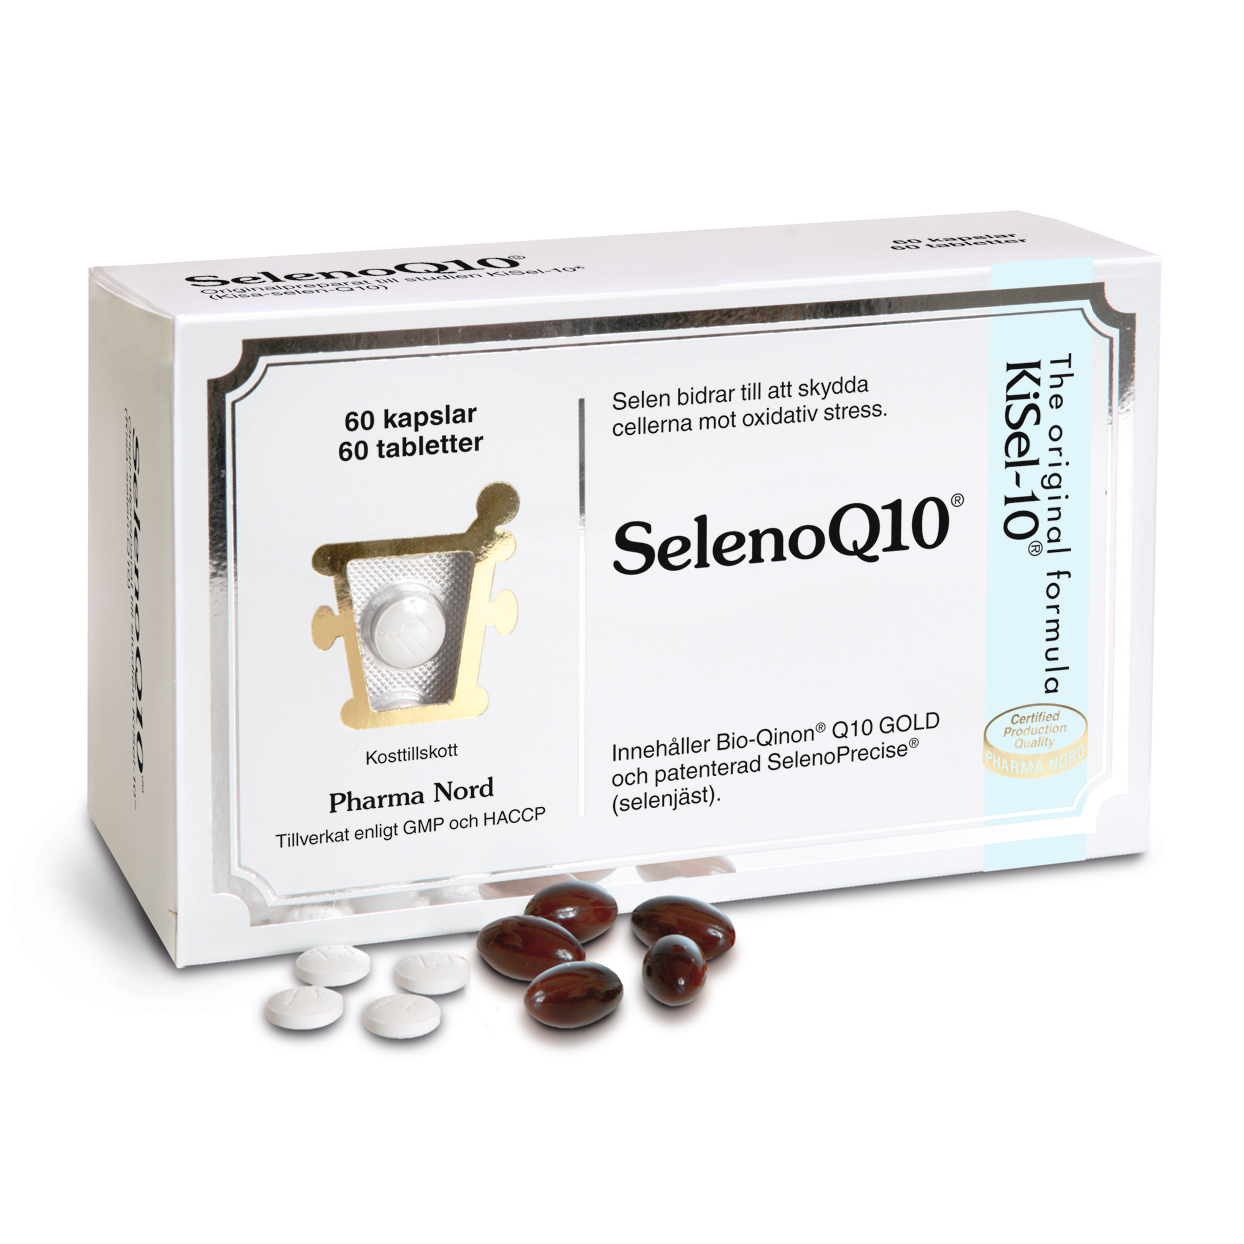 SelenoQ10 60 kapslar + 60 tabletter - AB Visby Hälsokost